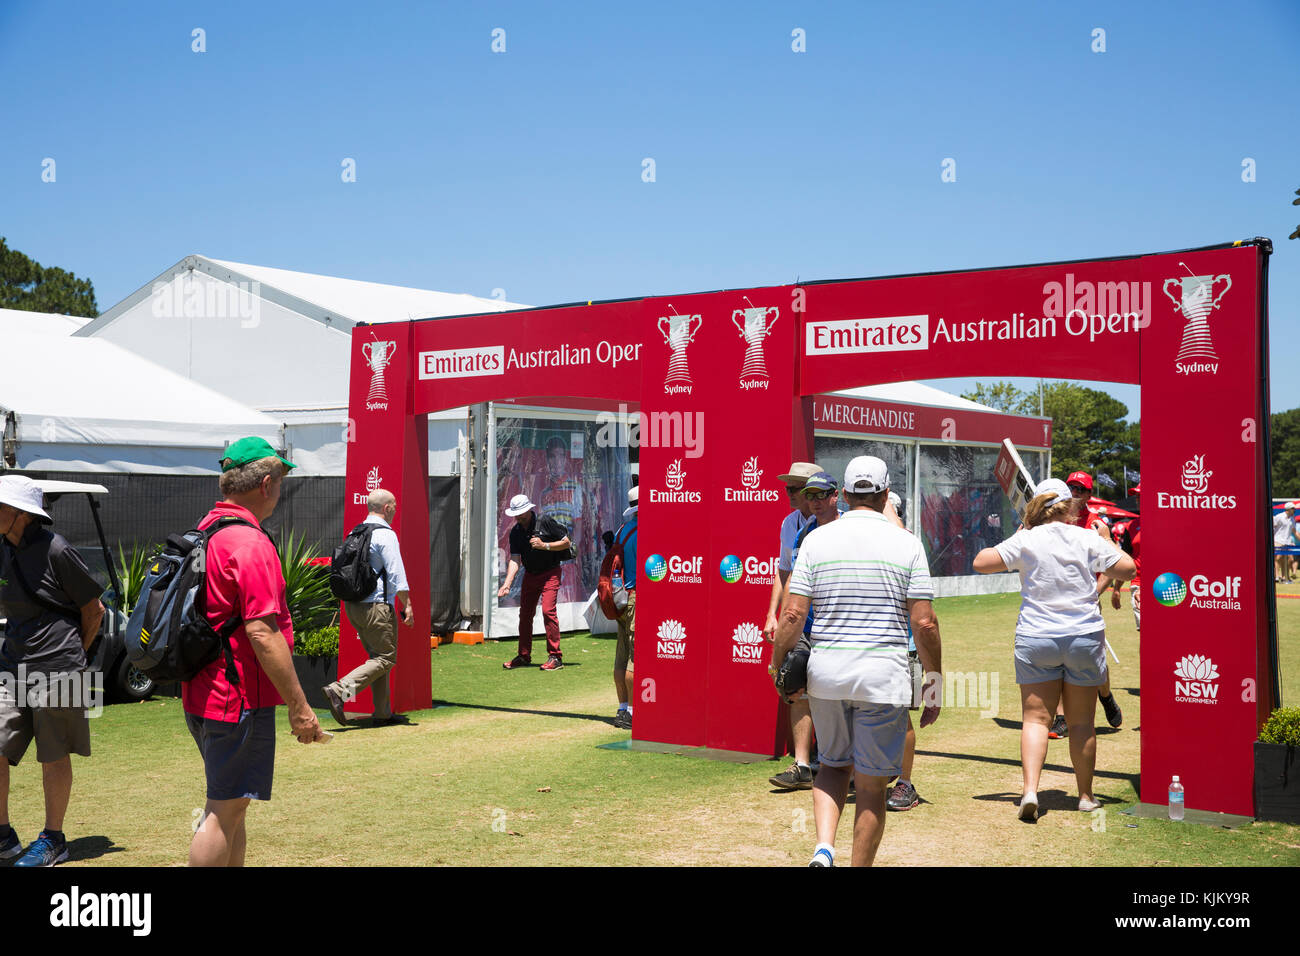 Emiratos Open de golf PGA de Australia en Sydney, Australia Foto de stock